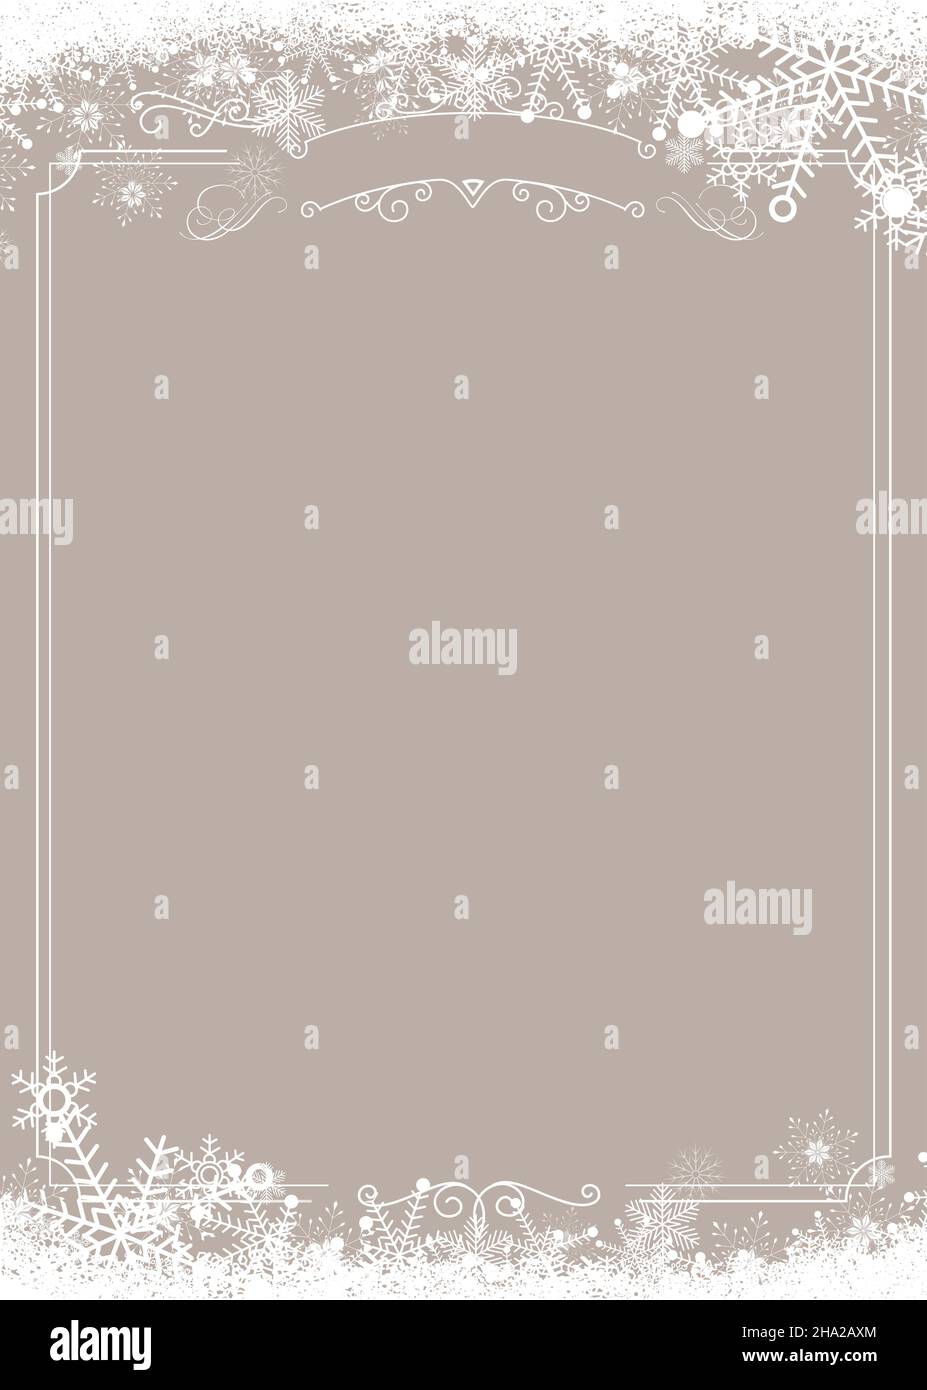 Menú de café vertical de A4 tamaños - borde de copos de nieve de invierno y fondo beige de Navidad Ilustración del Vector